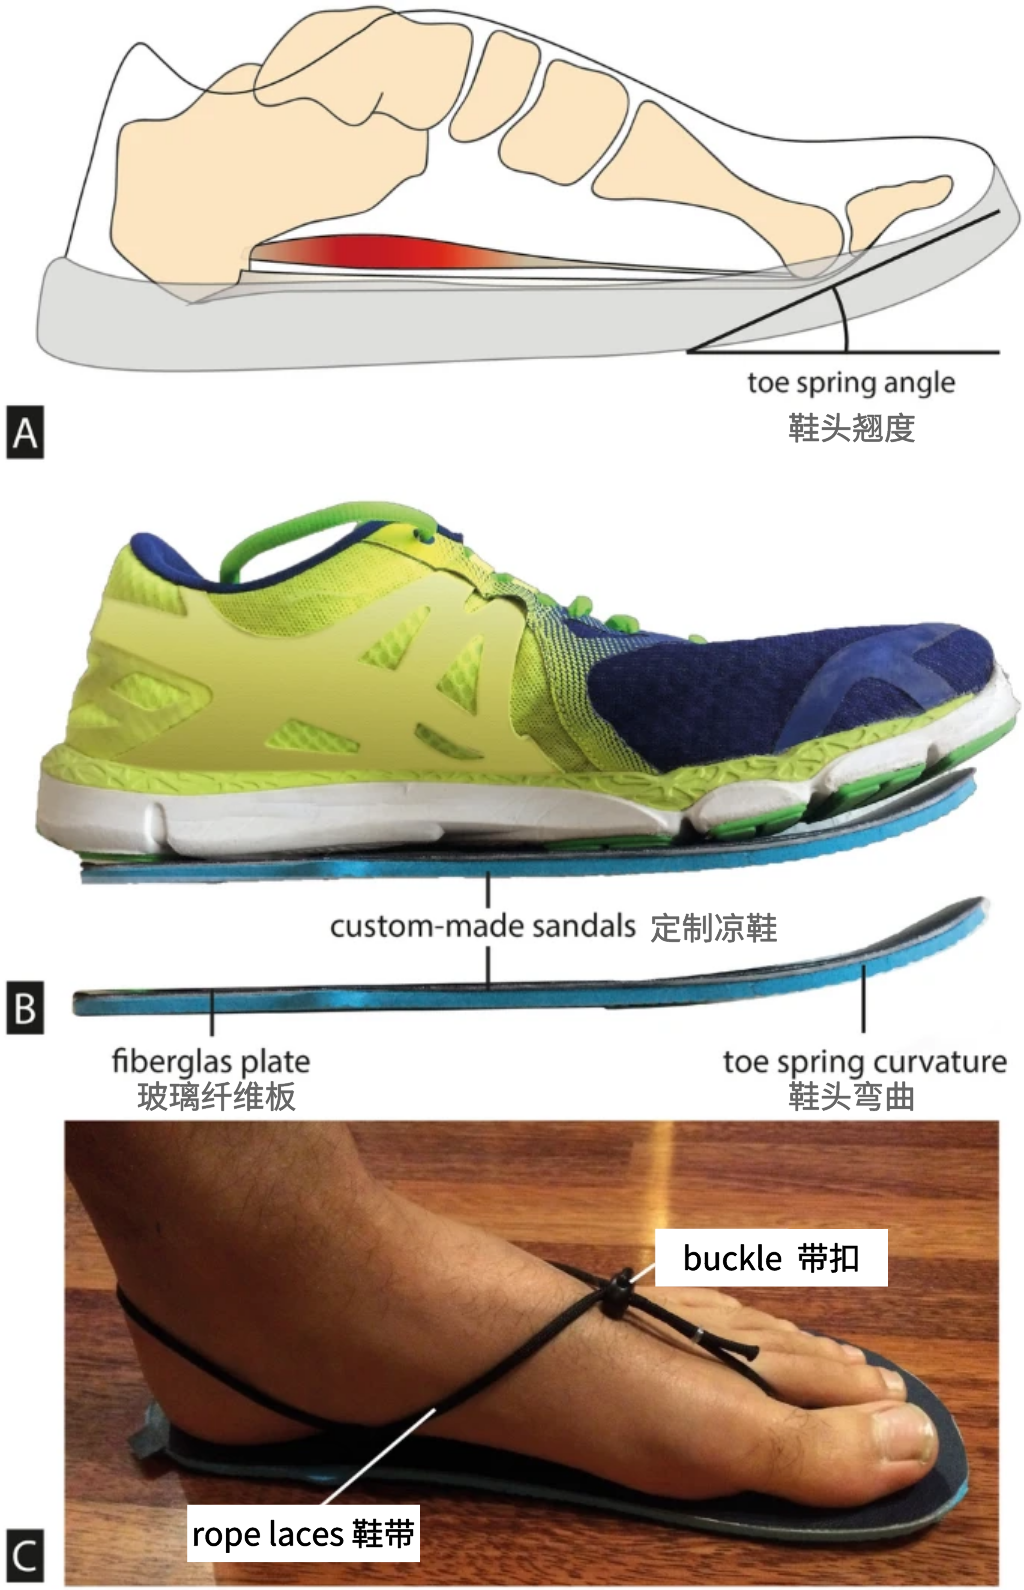 研究方向| 鞋尖翘度对人体步行生物力学的影响